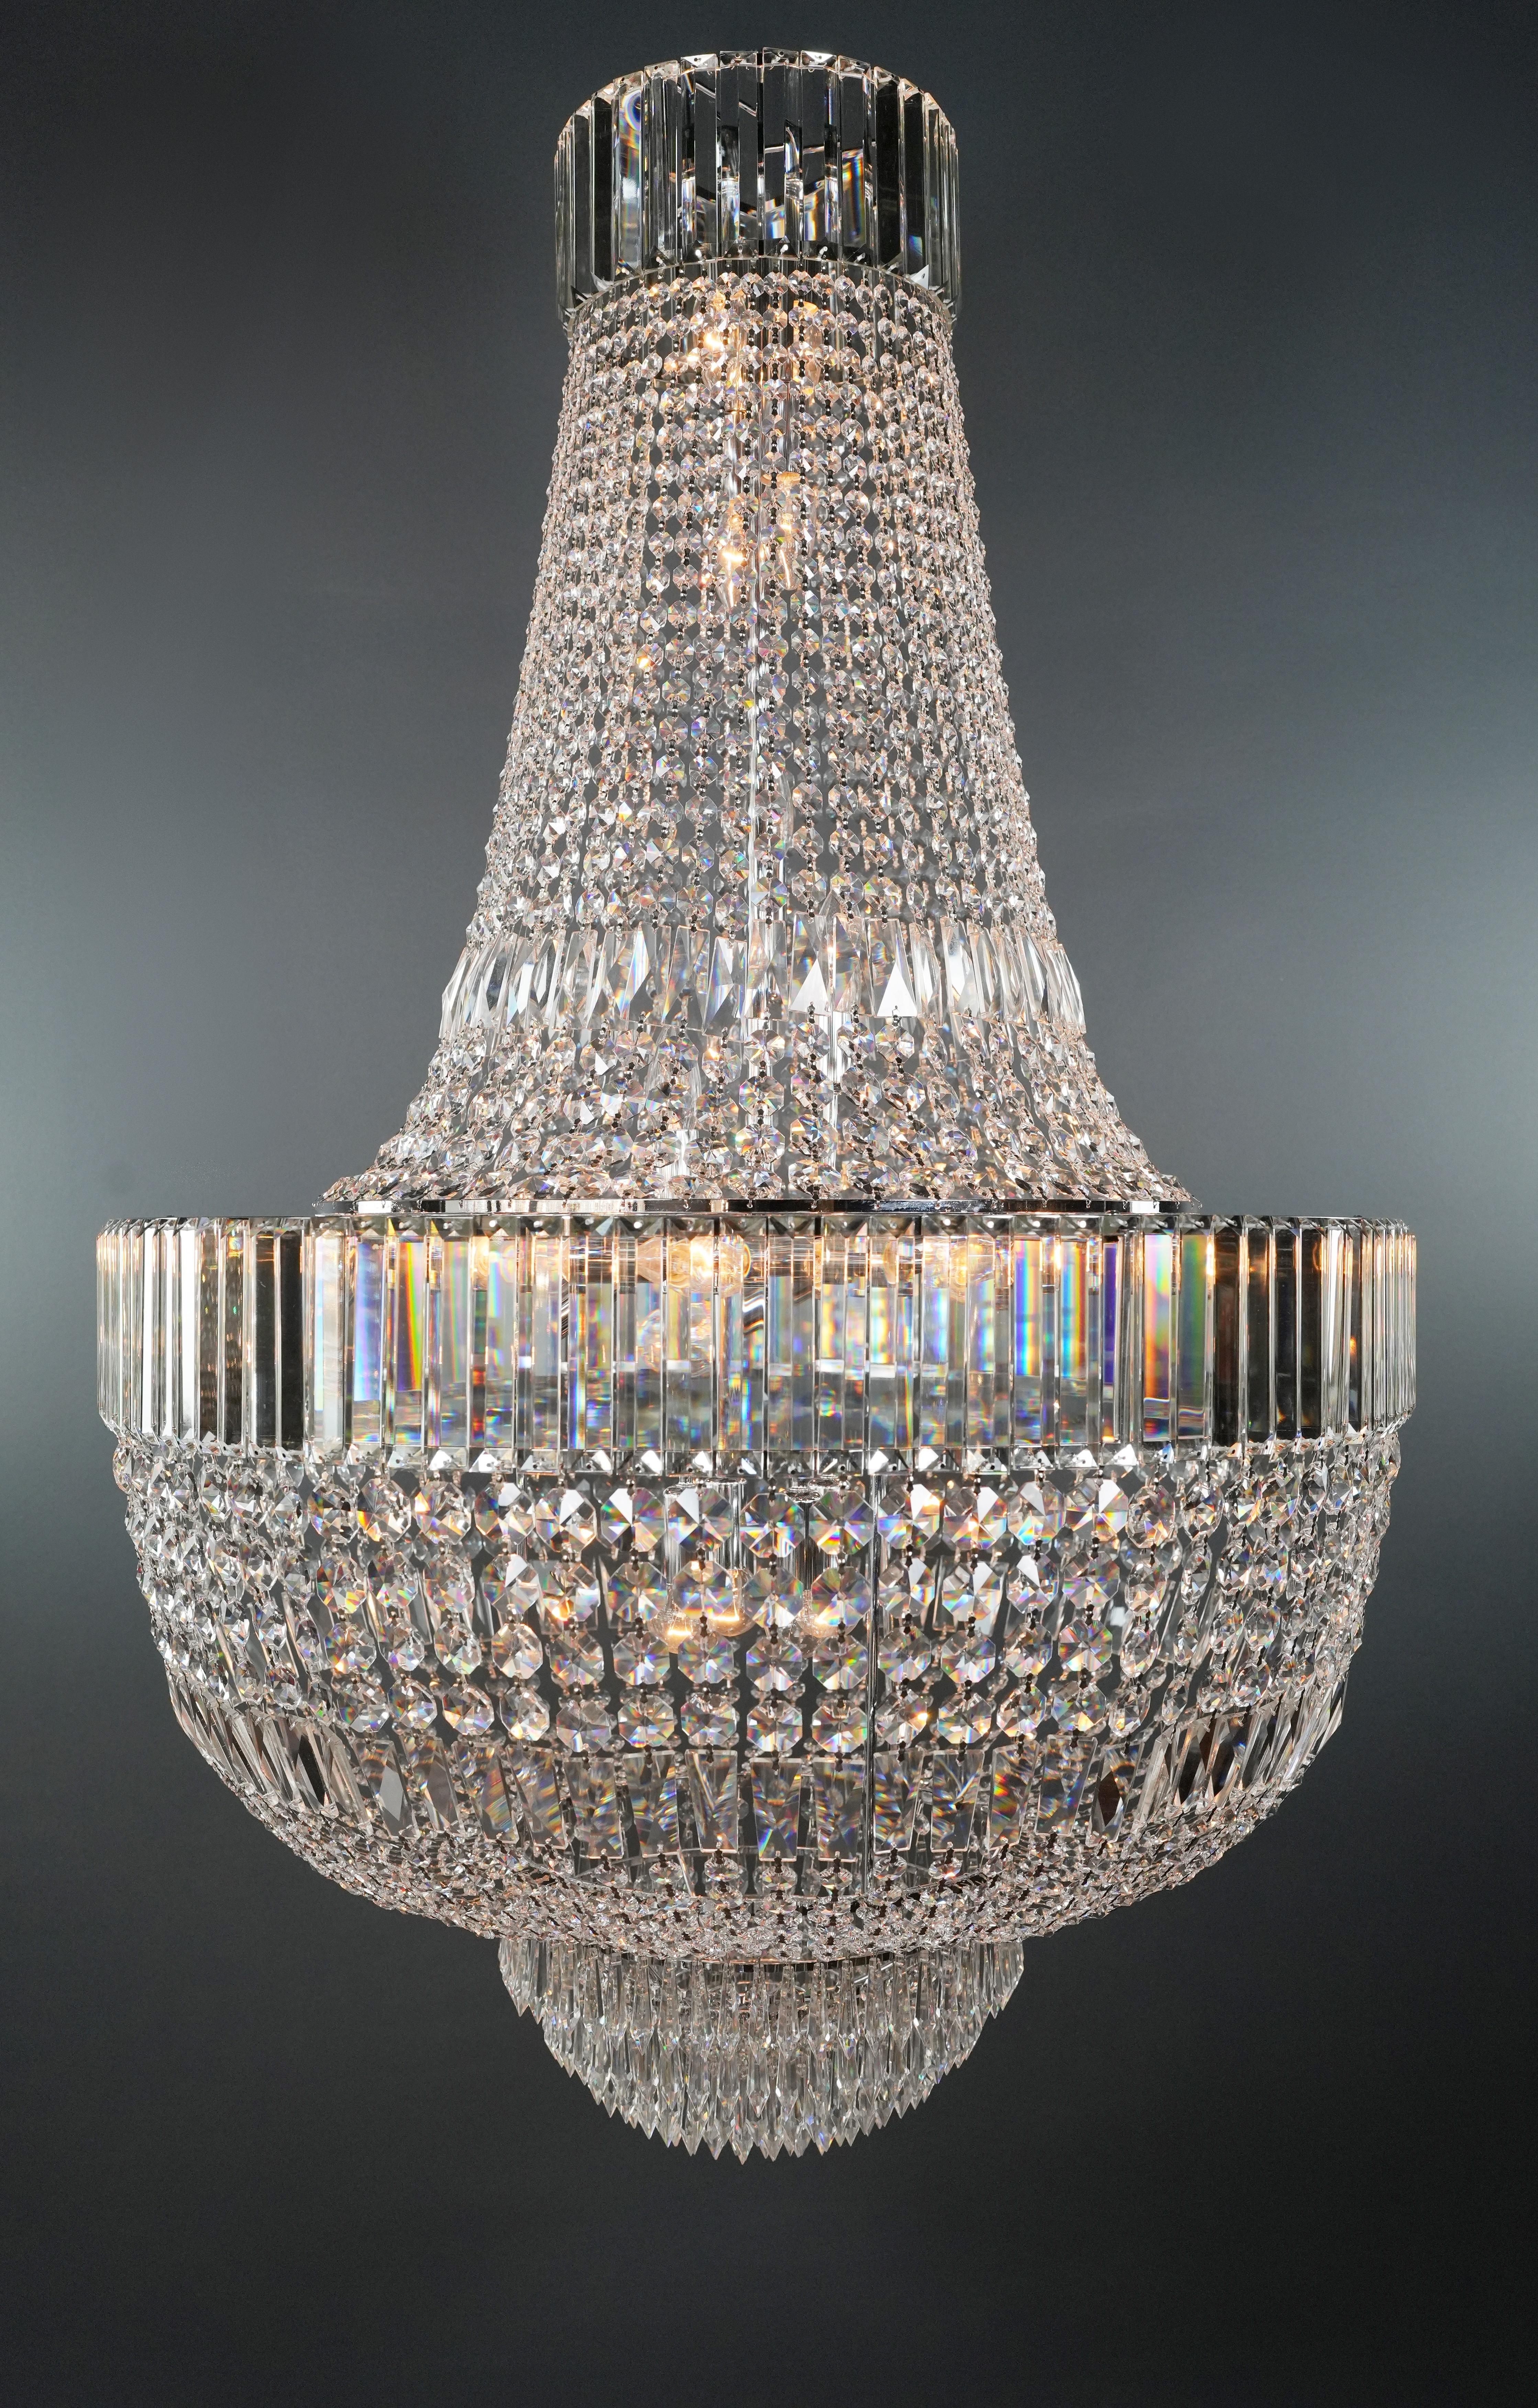 Art Deco Kristall-Kronleuchter - Empire Elegance in anpassbaren Größen

Wir stellen einen neuen Art Deco-Kristalllüster vor, der die Pracht der Empire-Ära einfängt und gleichzeitig moderne Raffinesse bietet. Dieser aus exquisitem Bleikristall